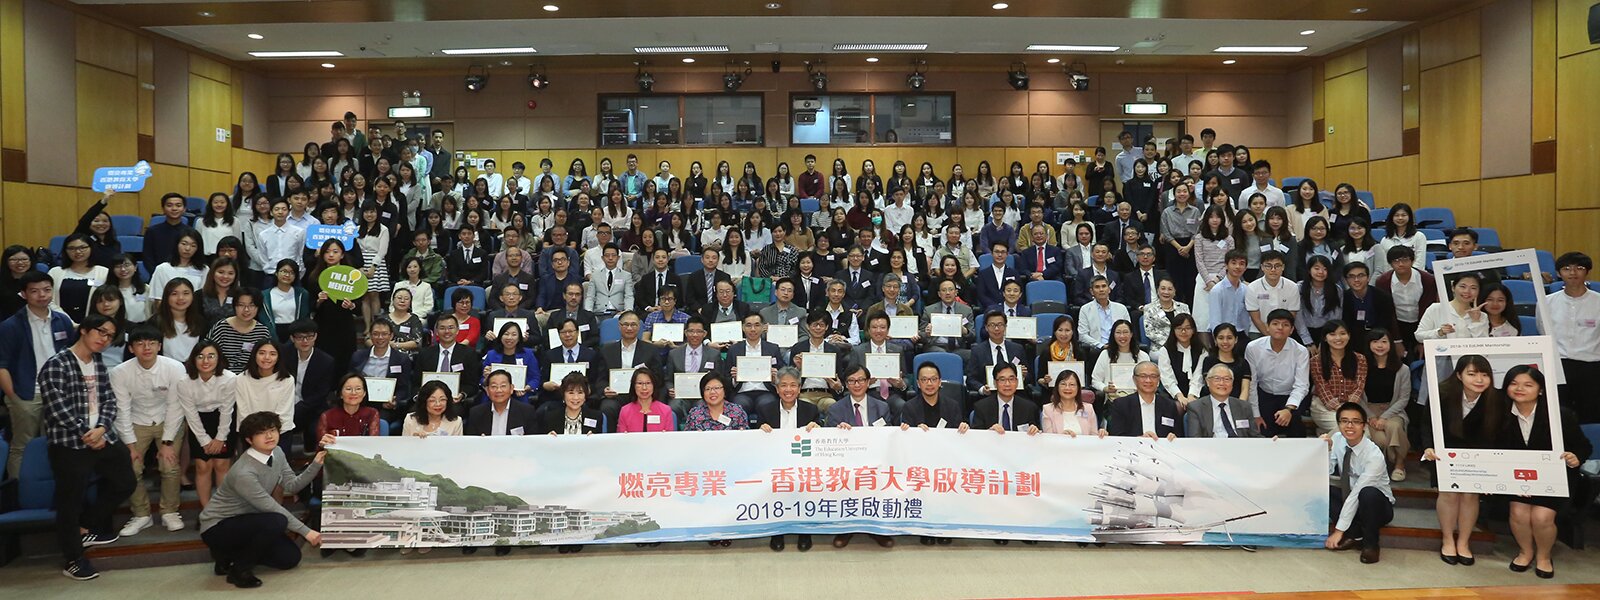 「燃亮專業—香港教育大學啟導計劃」2018-19年度啟動禮